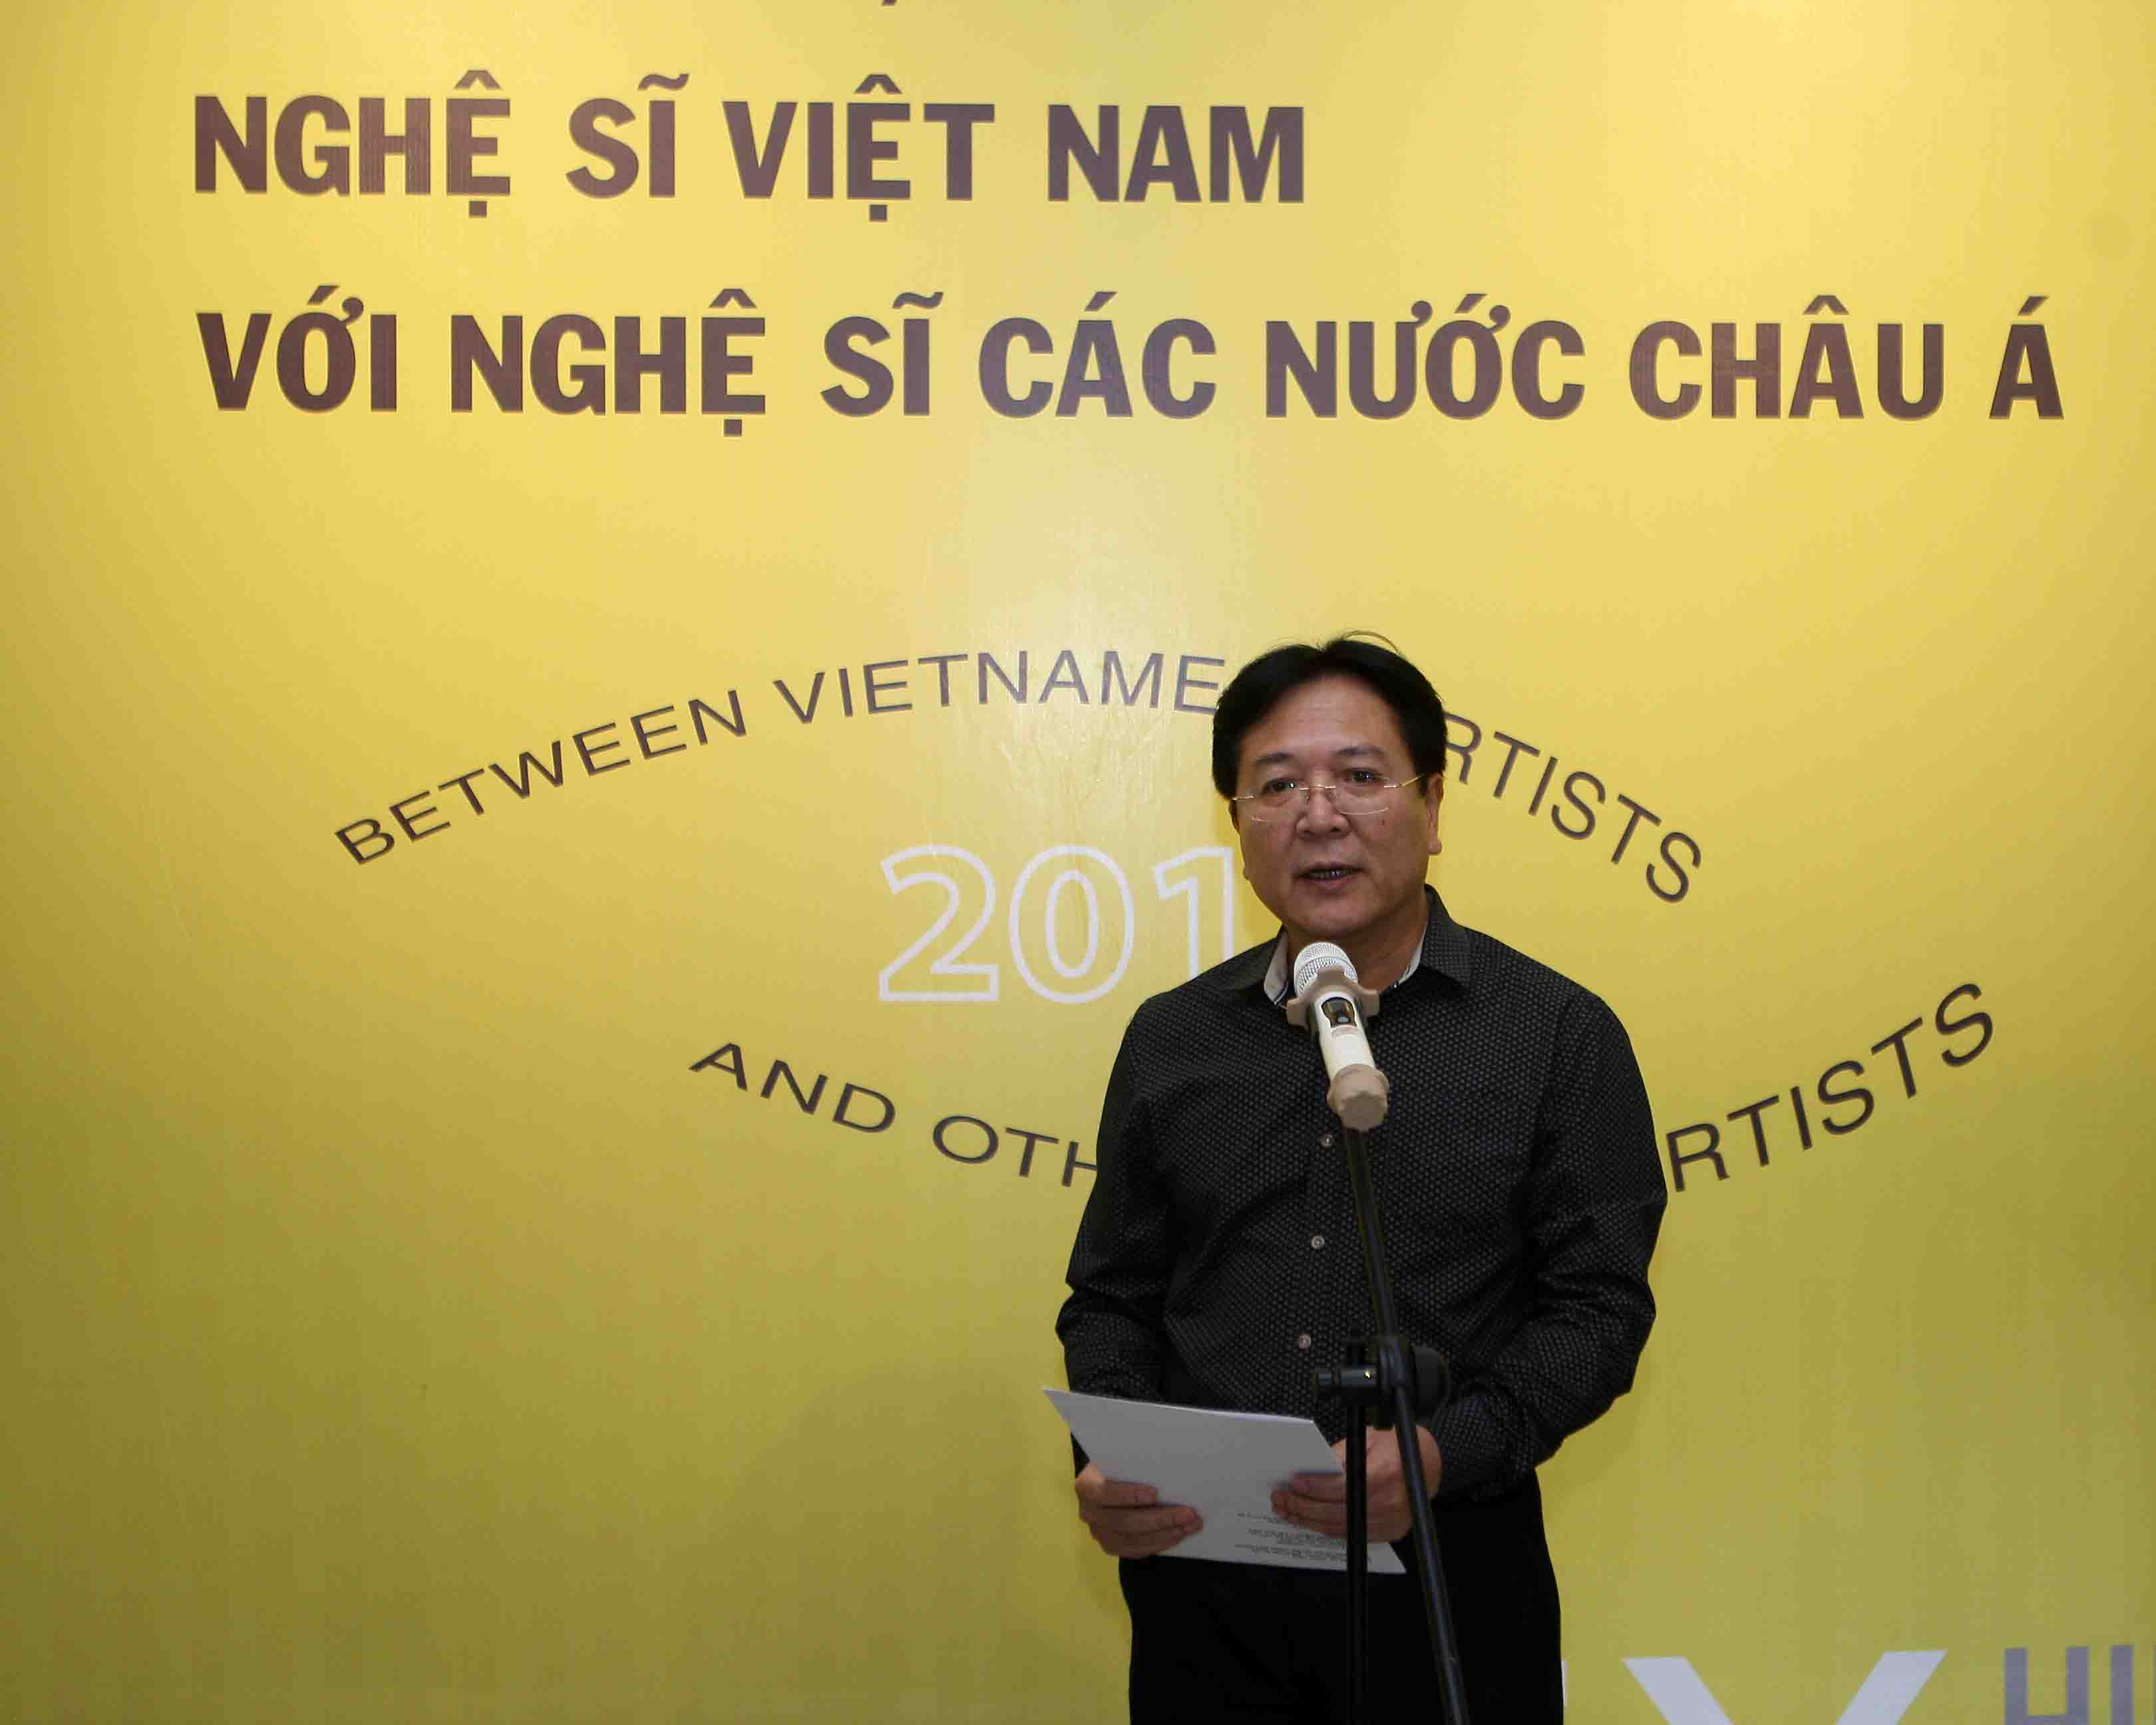 Khai mạc Triển lãm giao lưu nghệ sĩ Việt Nam với nghệ sĩ các nước châu Á